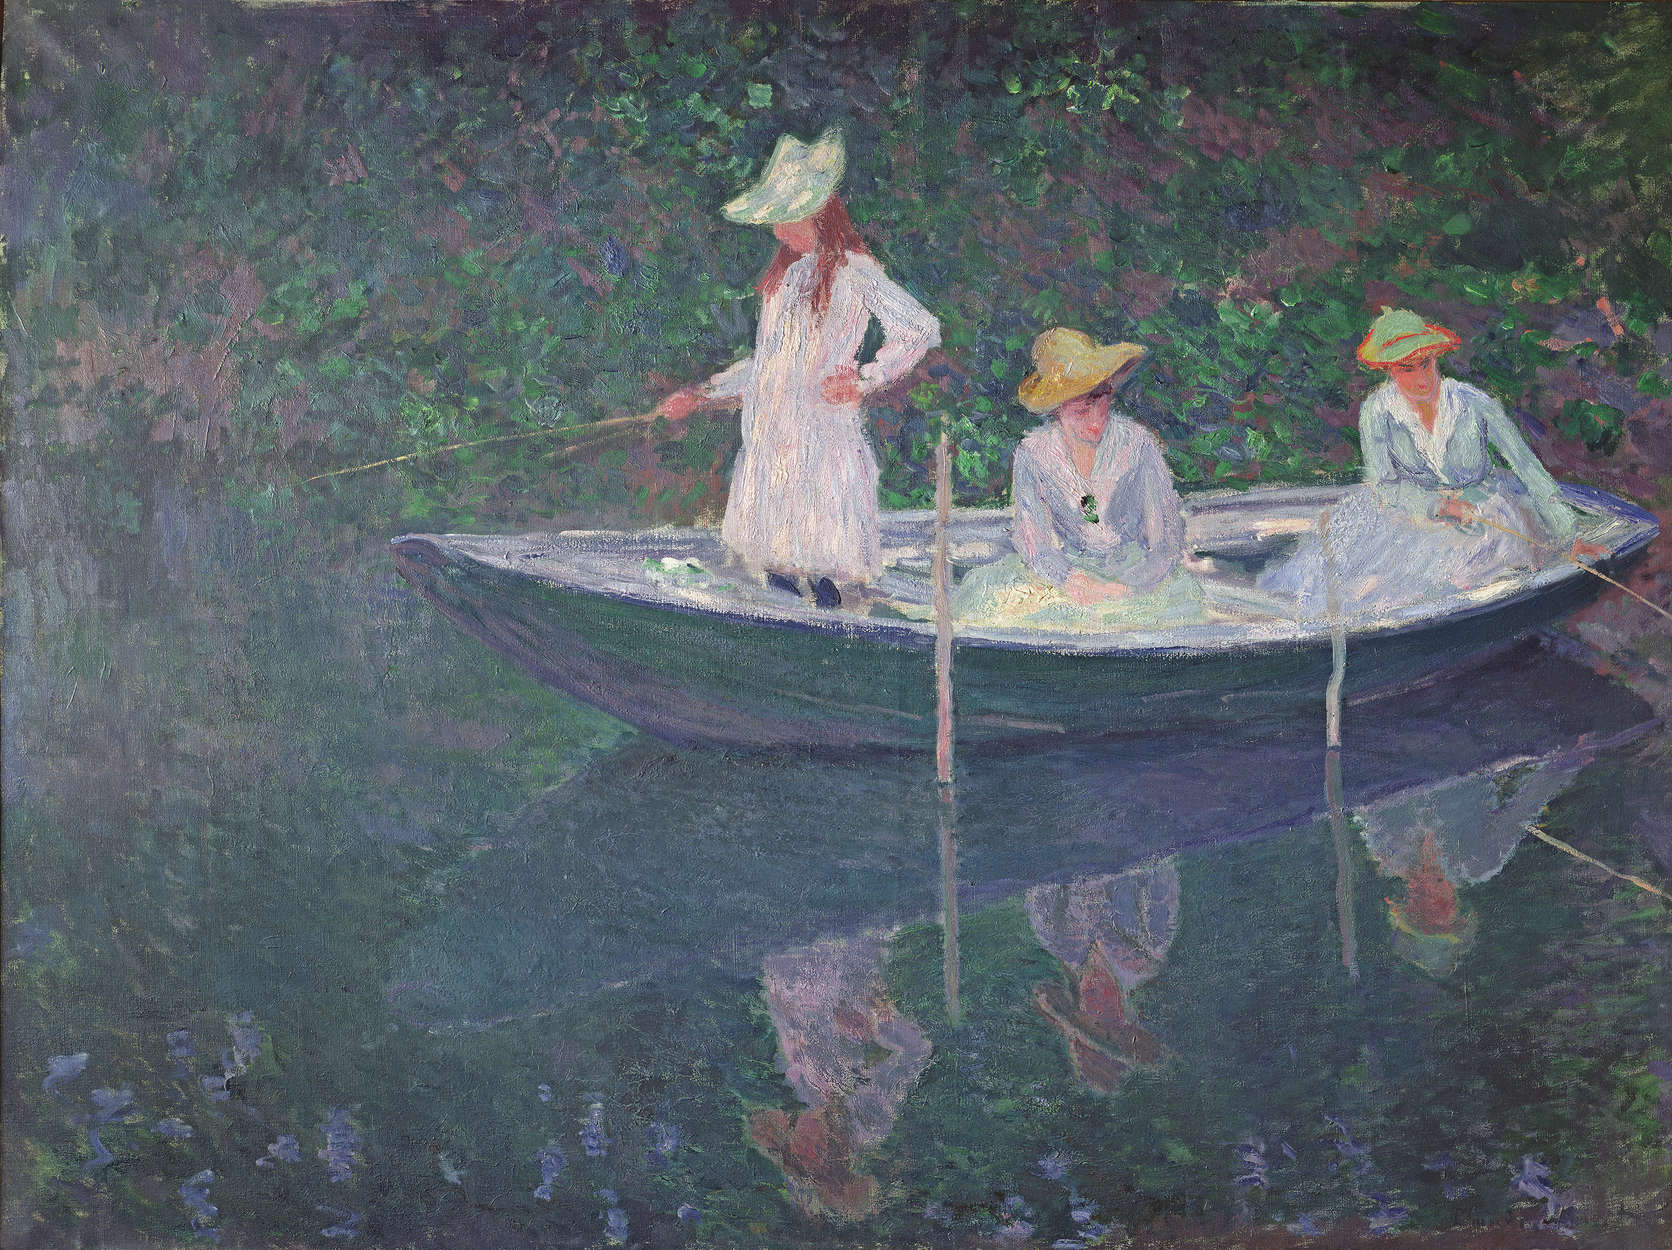             Papier peint panoramique "Le bateau à Giverny" de Claude Monet
        